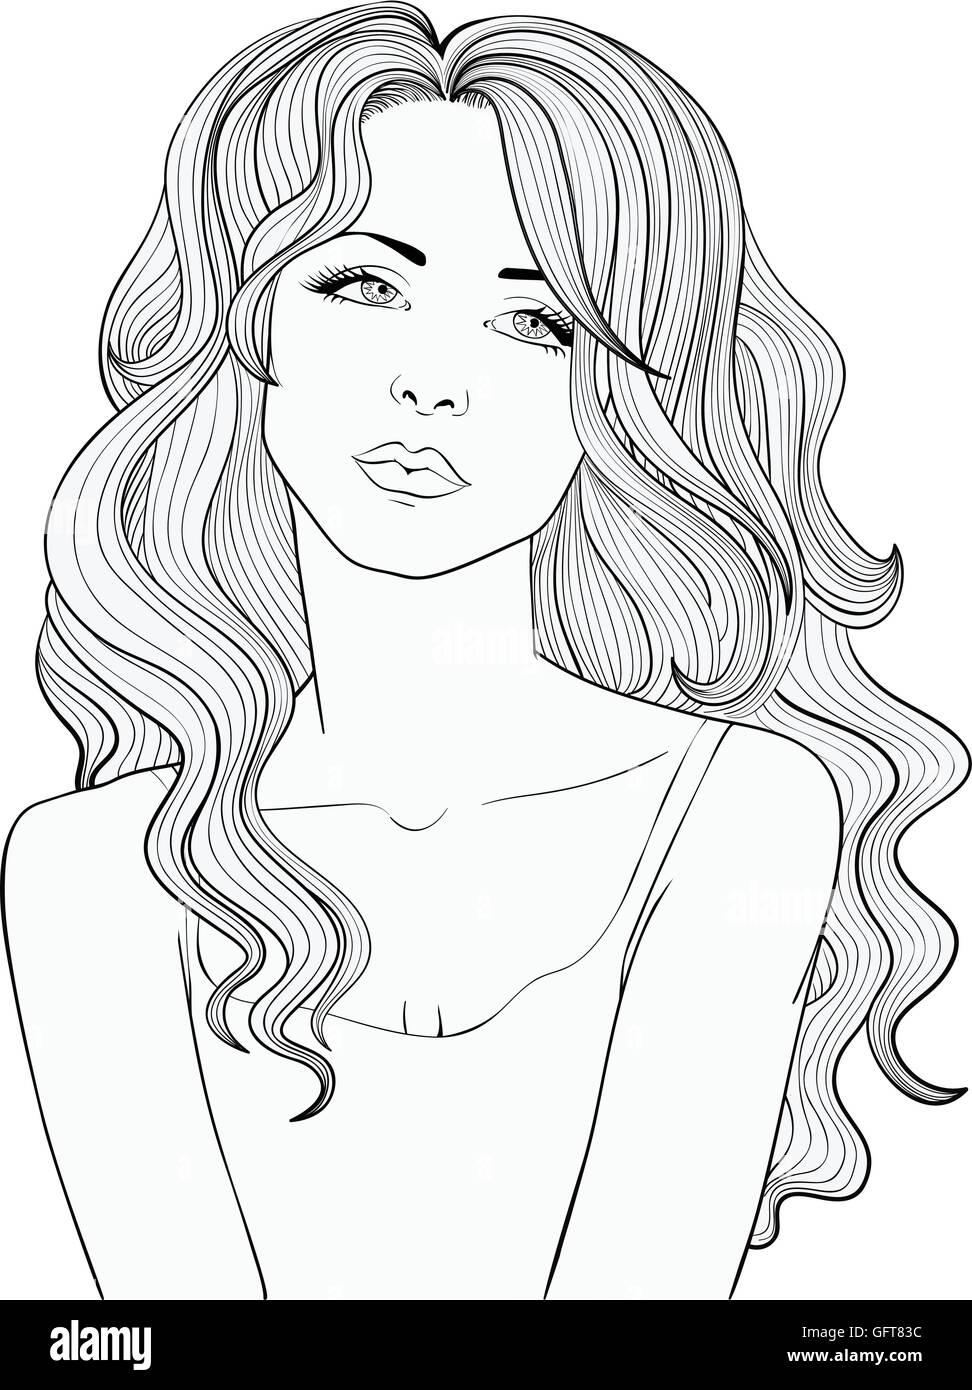 La linea di disegno vettoriale di una bella ragazza con lunghi capelli ondulati. Illustrazione Vettoriale